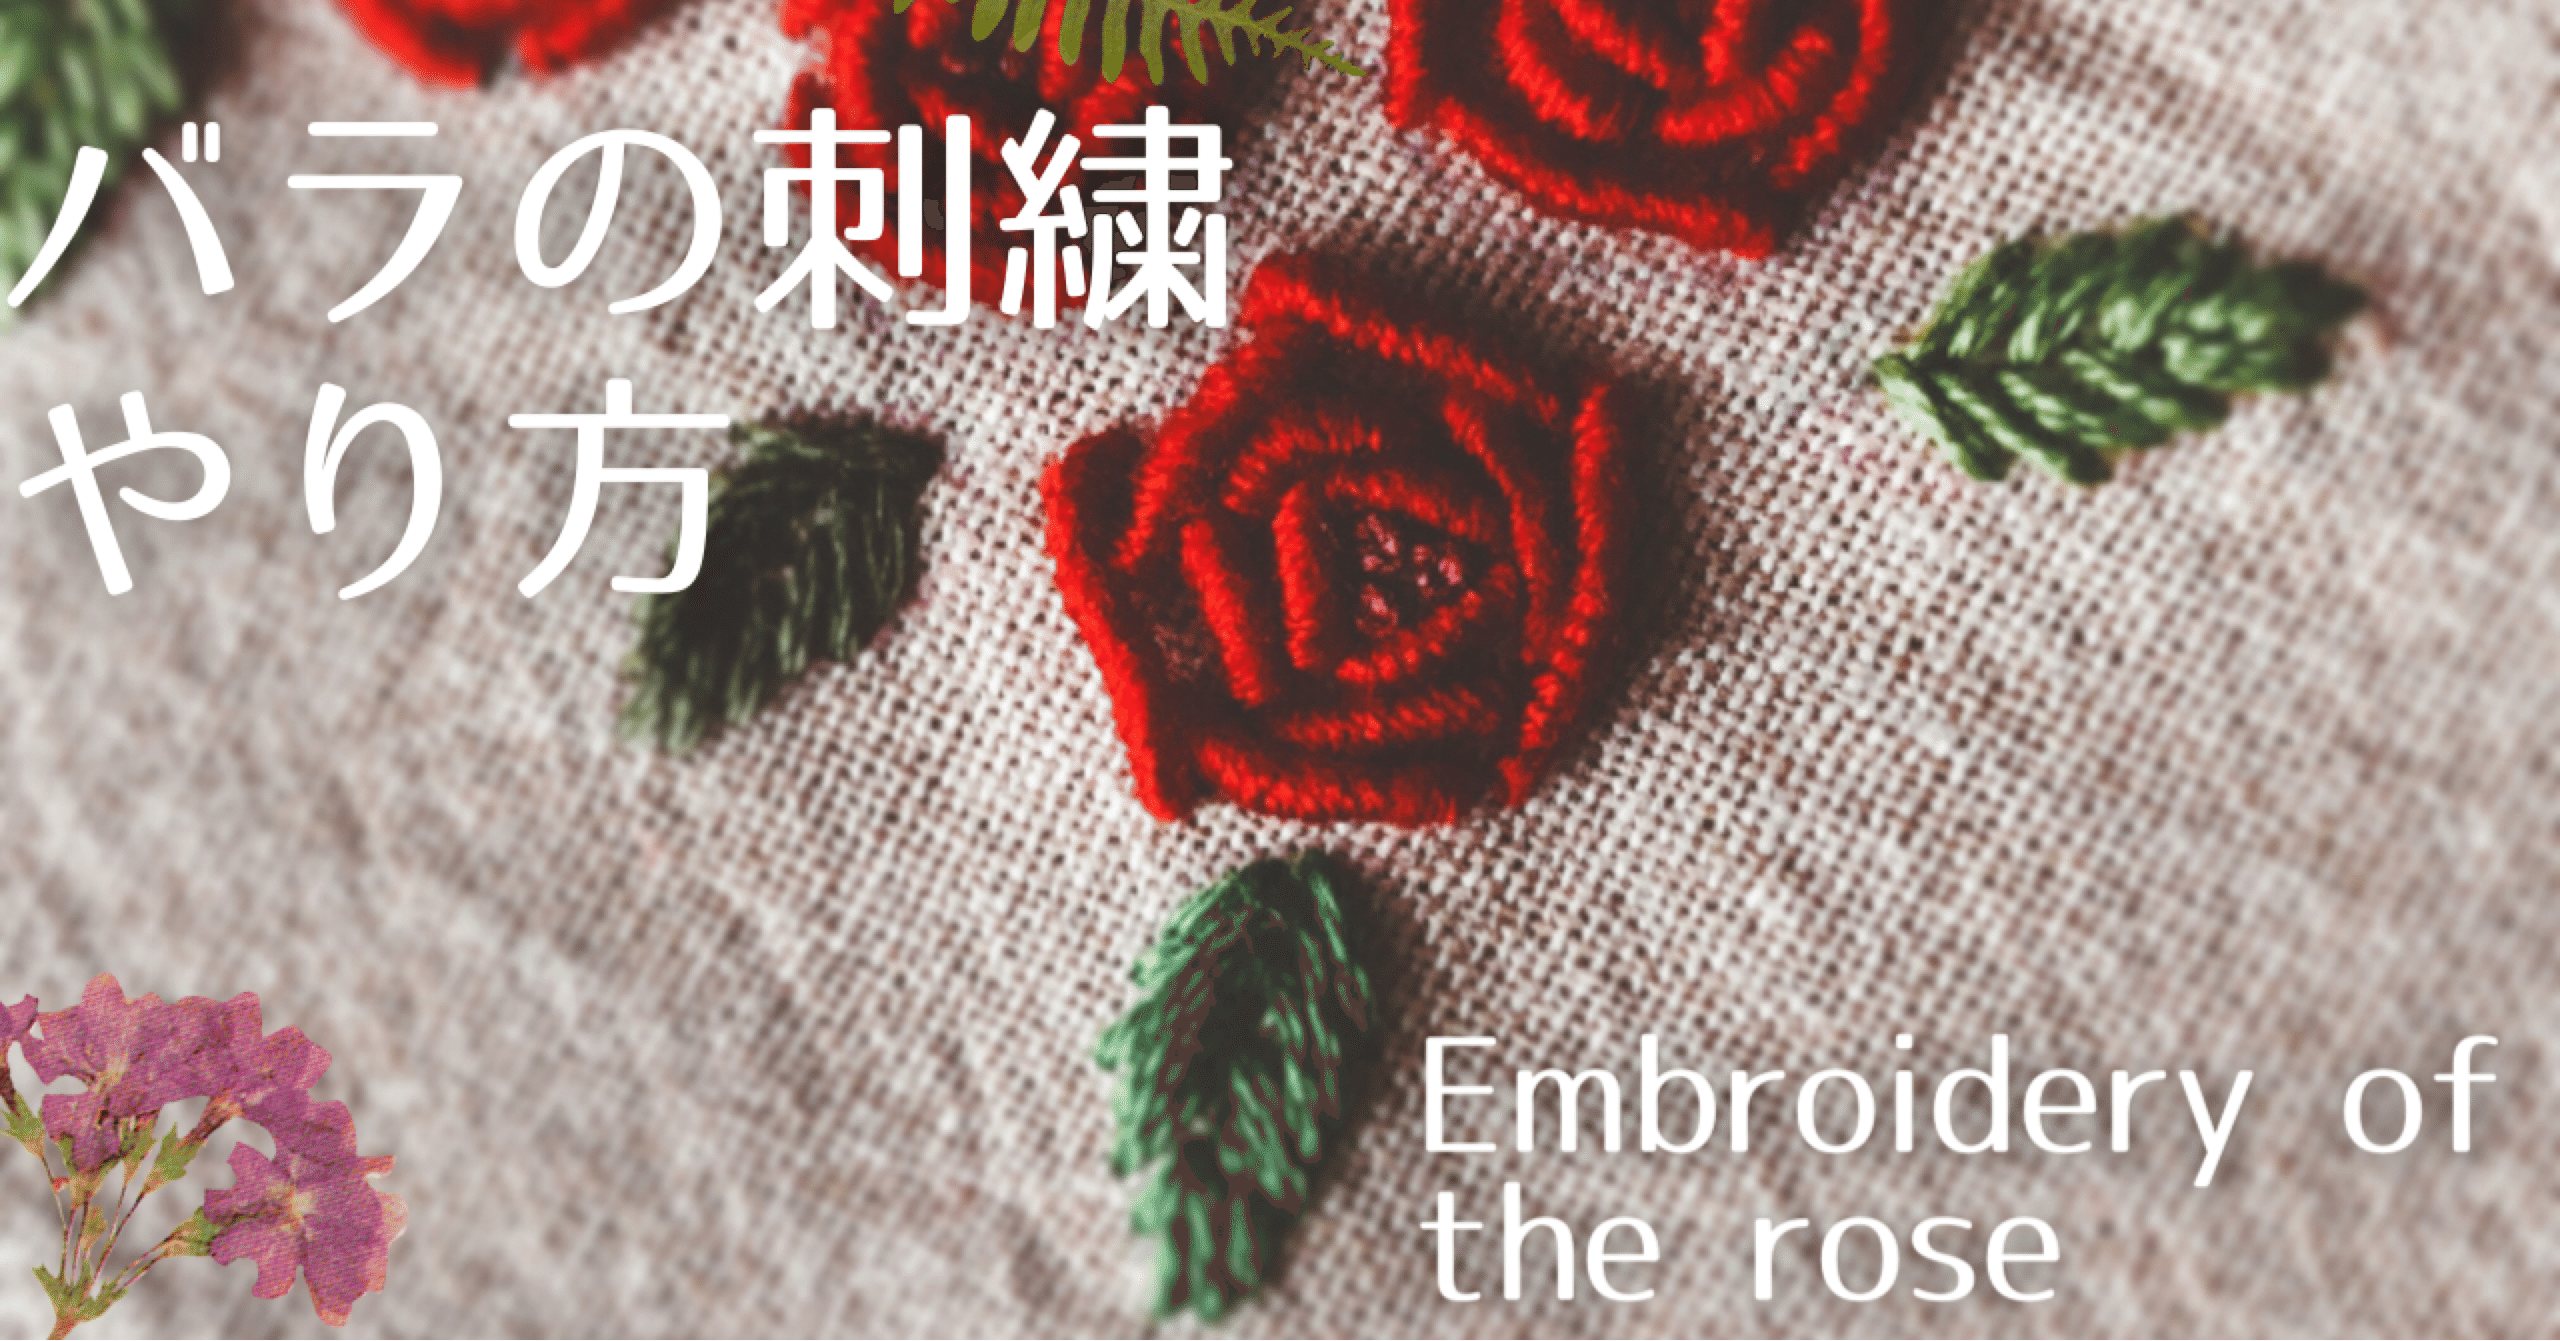 刺繍 簡単3つの基本ステッチでできる赤いバラの花 モリノザッカ Poko Note